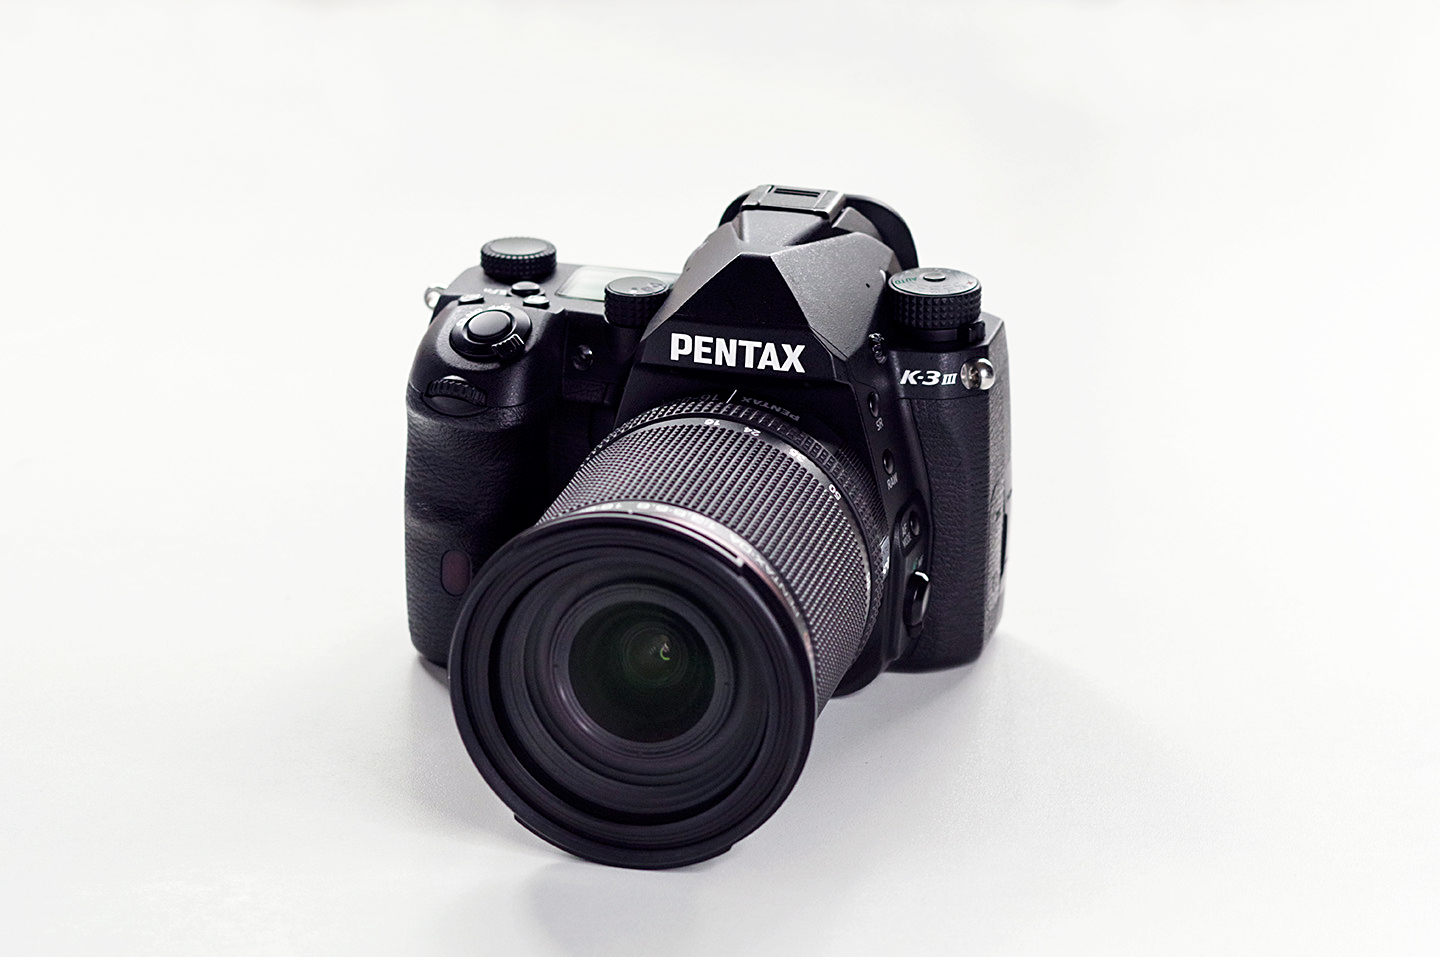 PENTAX-DA16-85mmF3.5-5.6ED DC WR